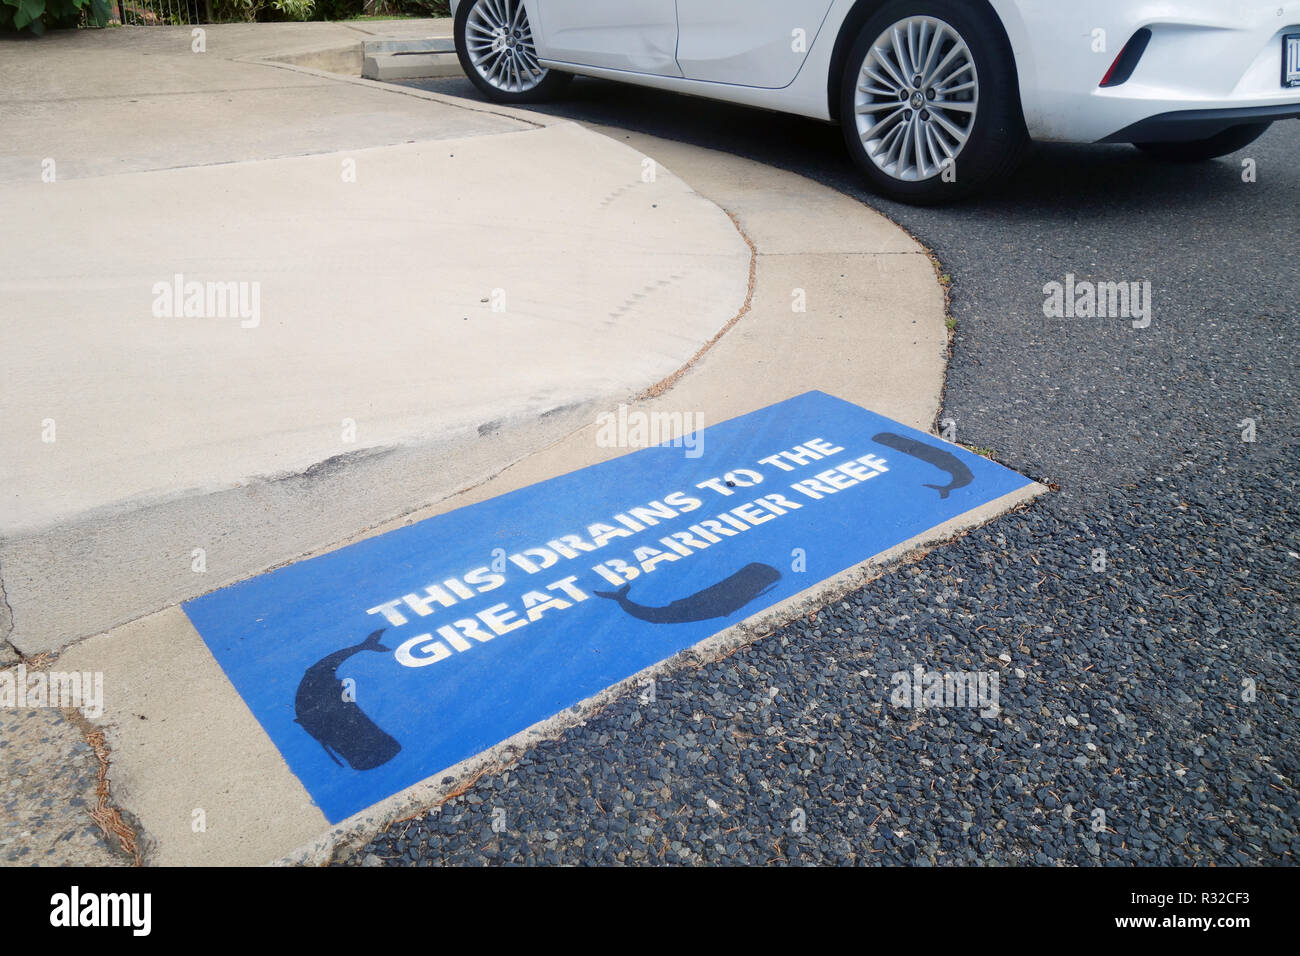 Signe au pochoir en spécifiant que ce parking se vide à la Grande Barrière de Corail, la marina, Port Campbell, Queensland, Australie. Pas de PR Banque D'Images